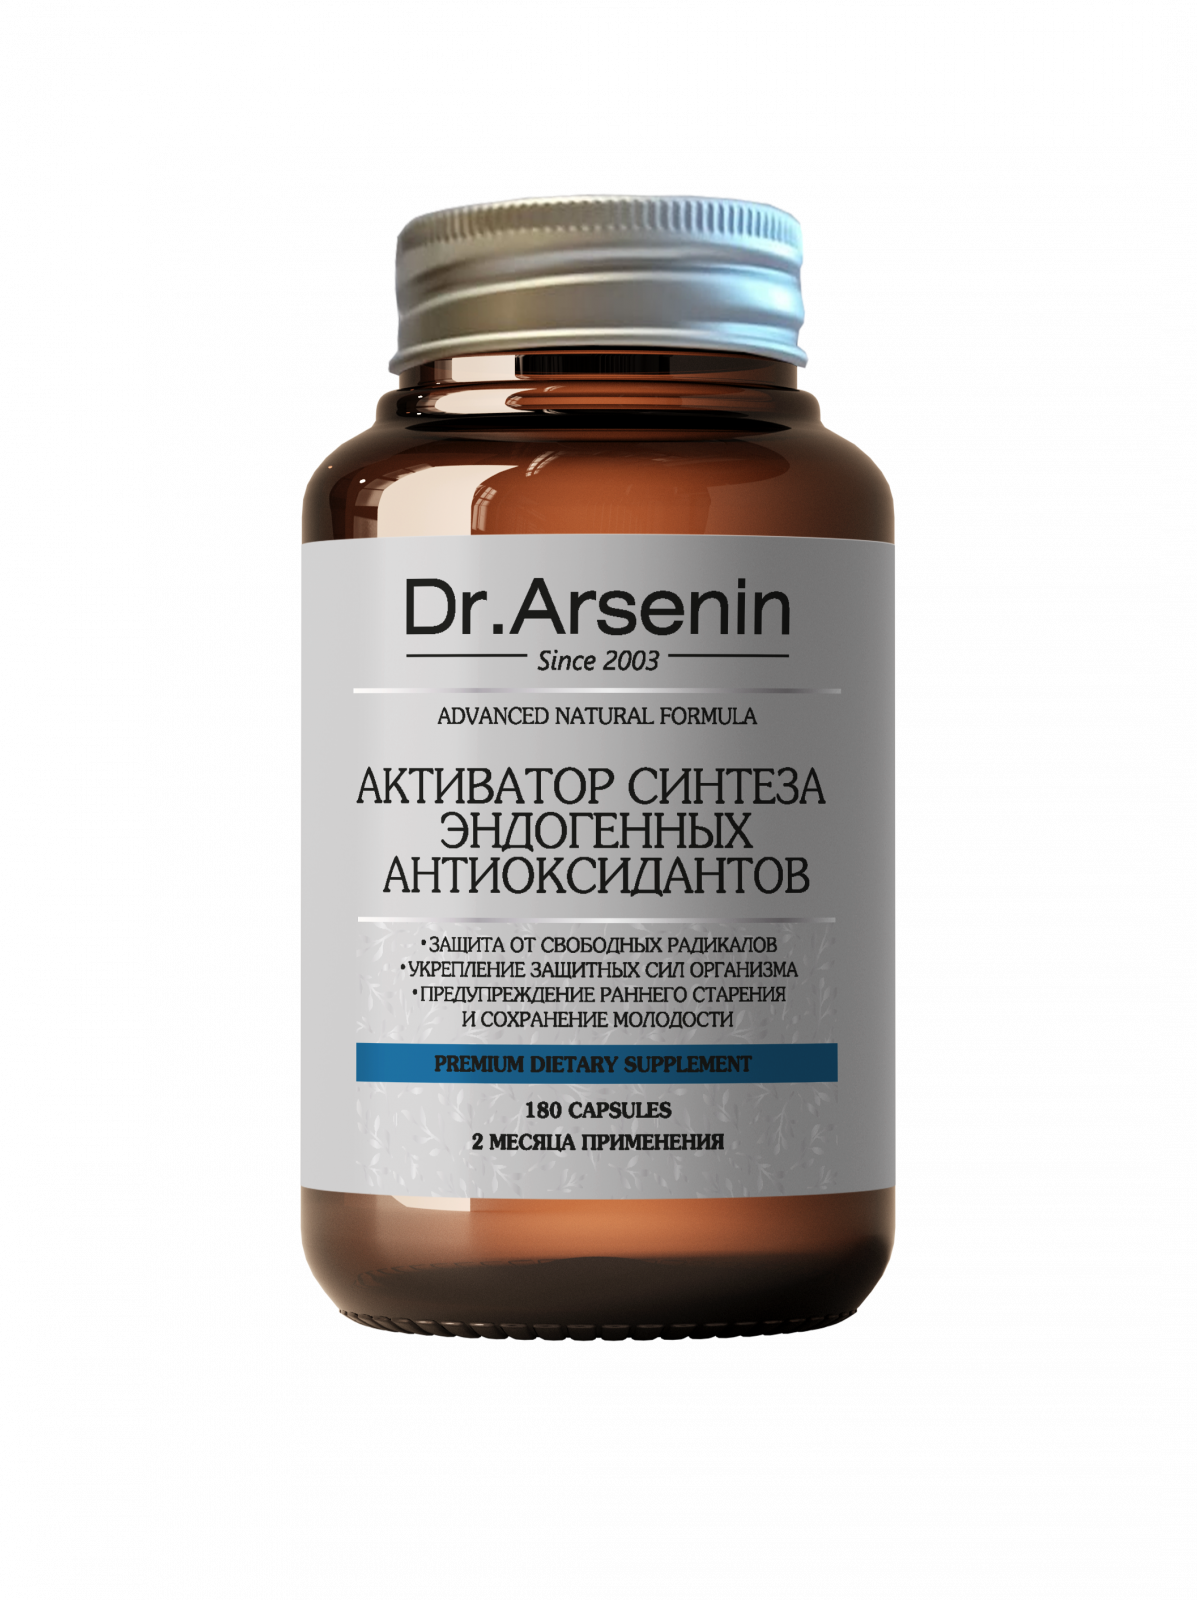  «Активатор синтеза эндогенных антиоксидантов Dr.Arsenin 180	капсул» - Premium